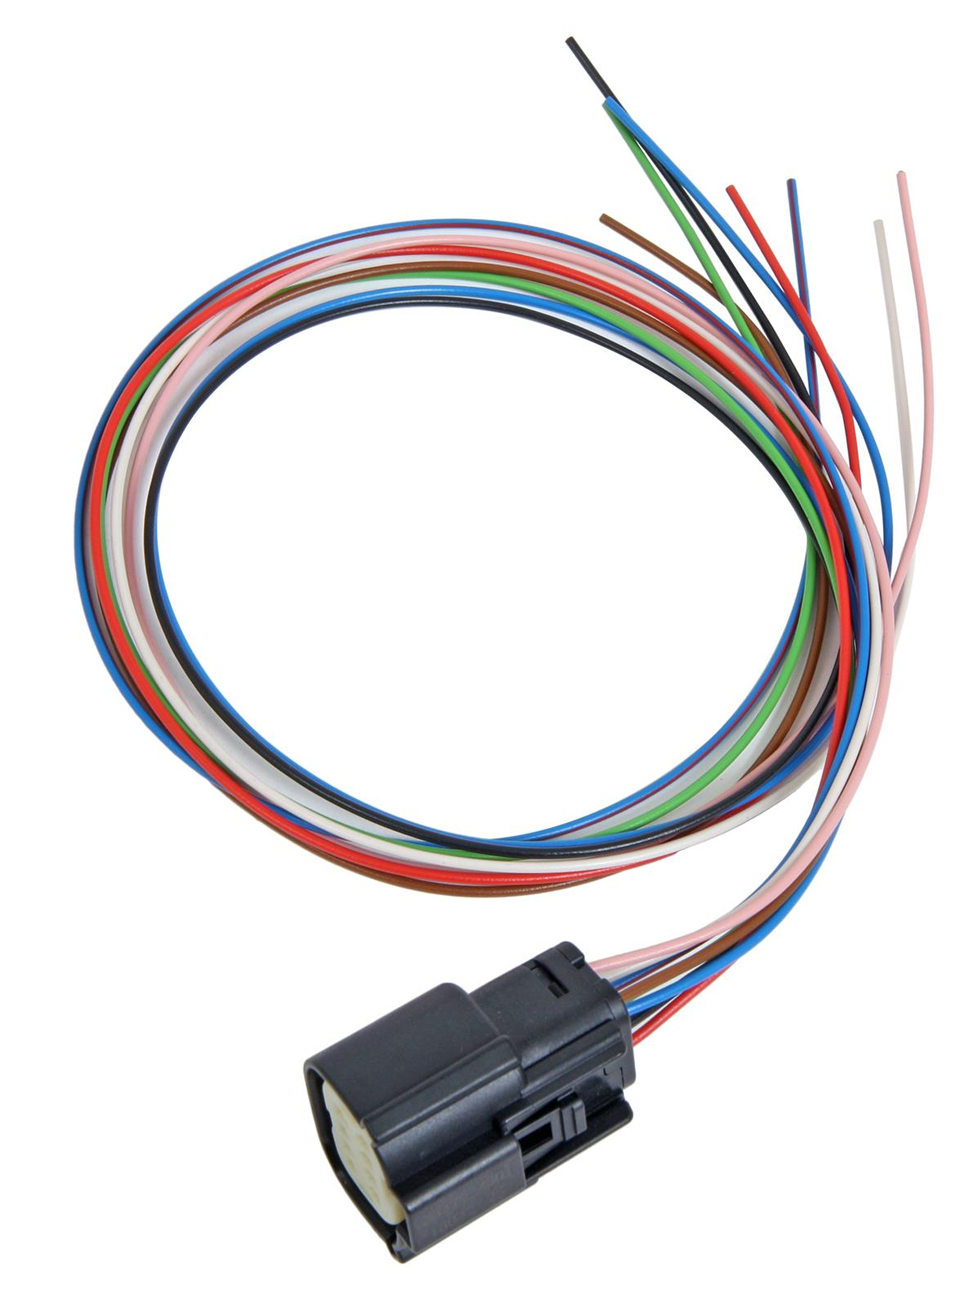 2910000484200 - VDO SingleViu 8 pin cable Molex MX150